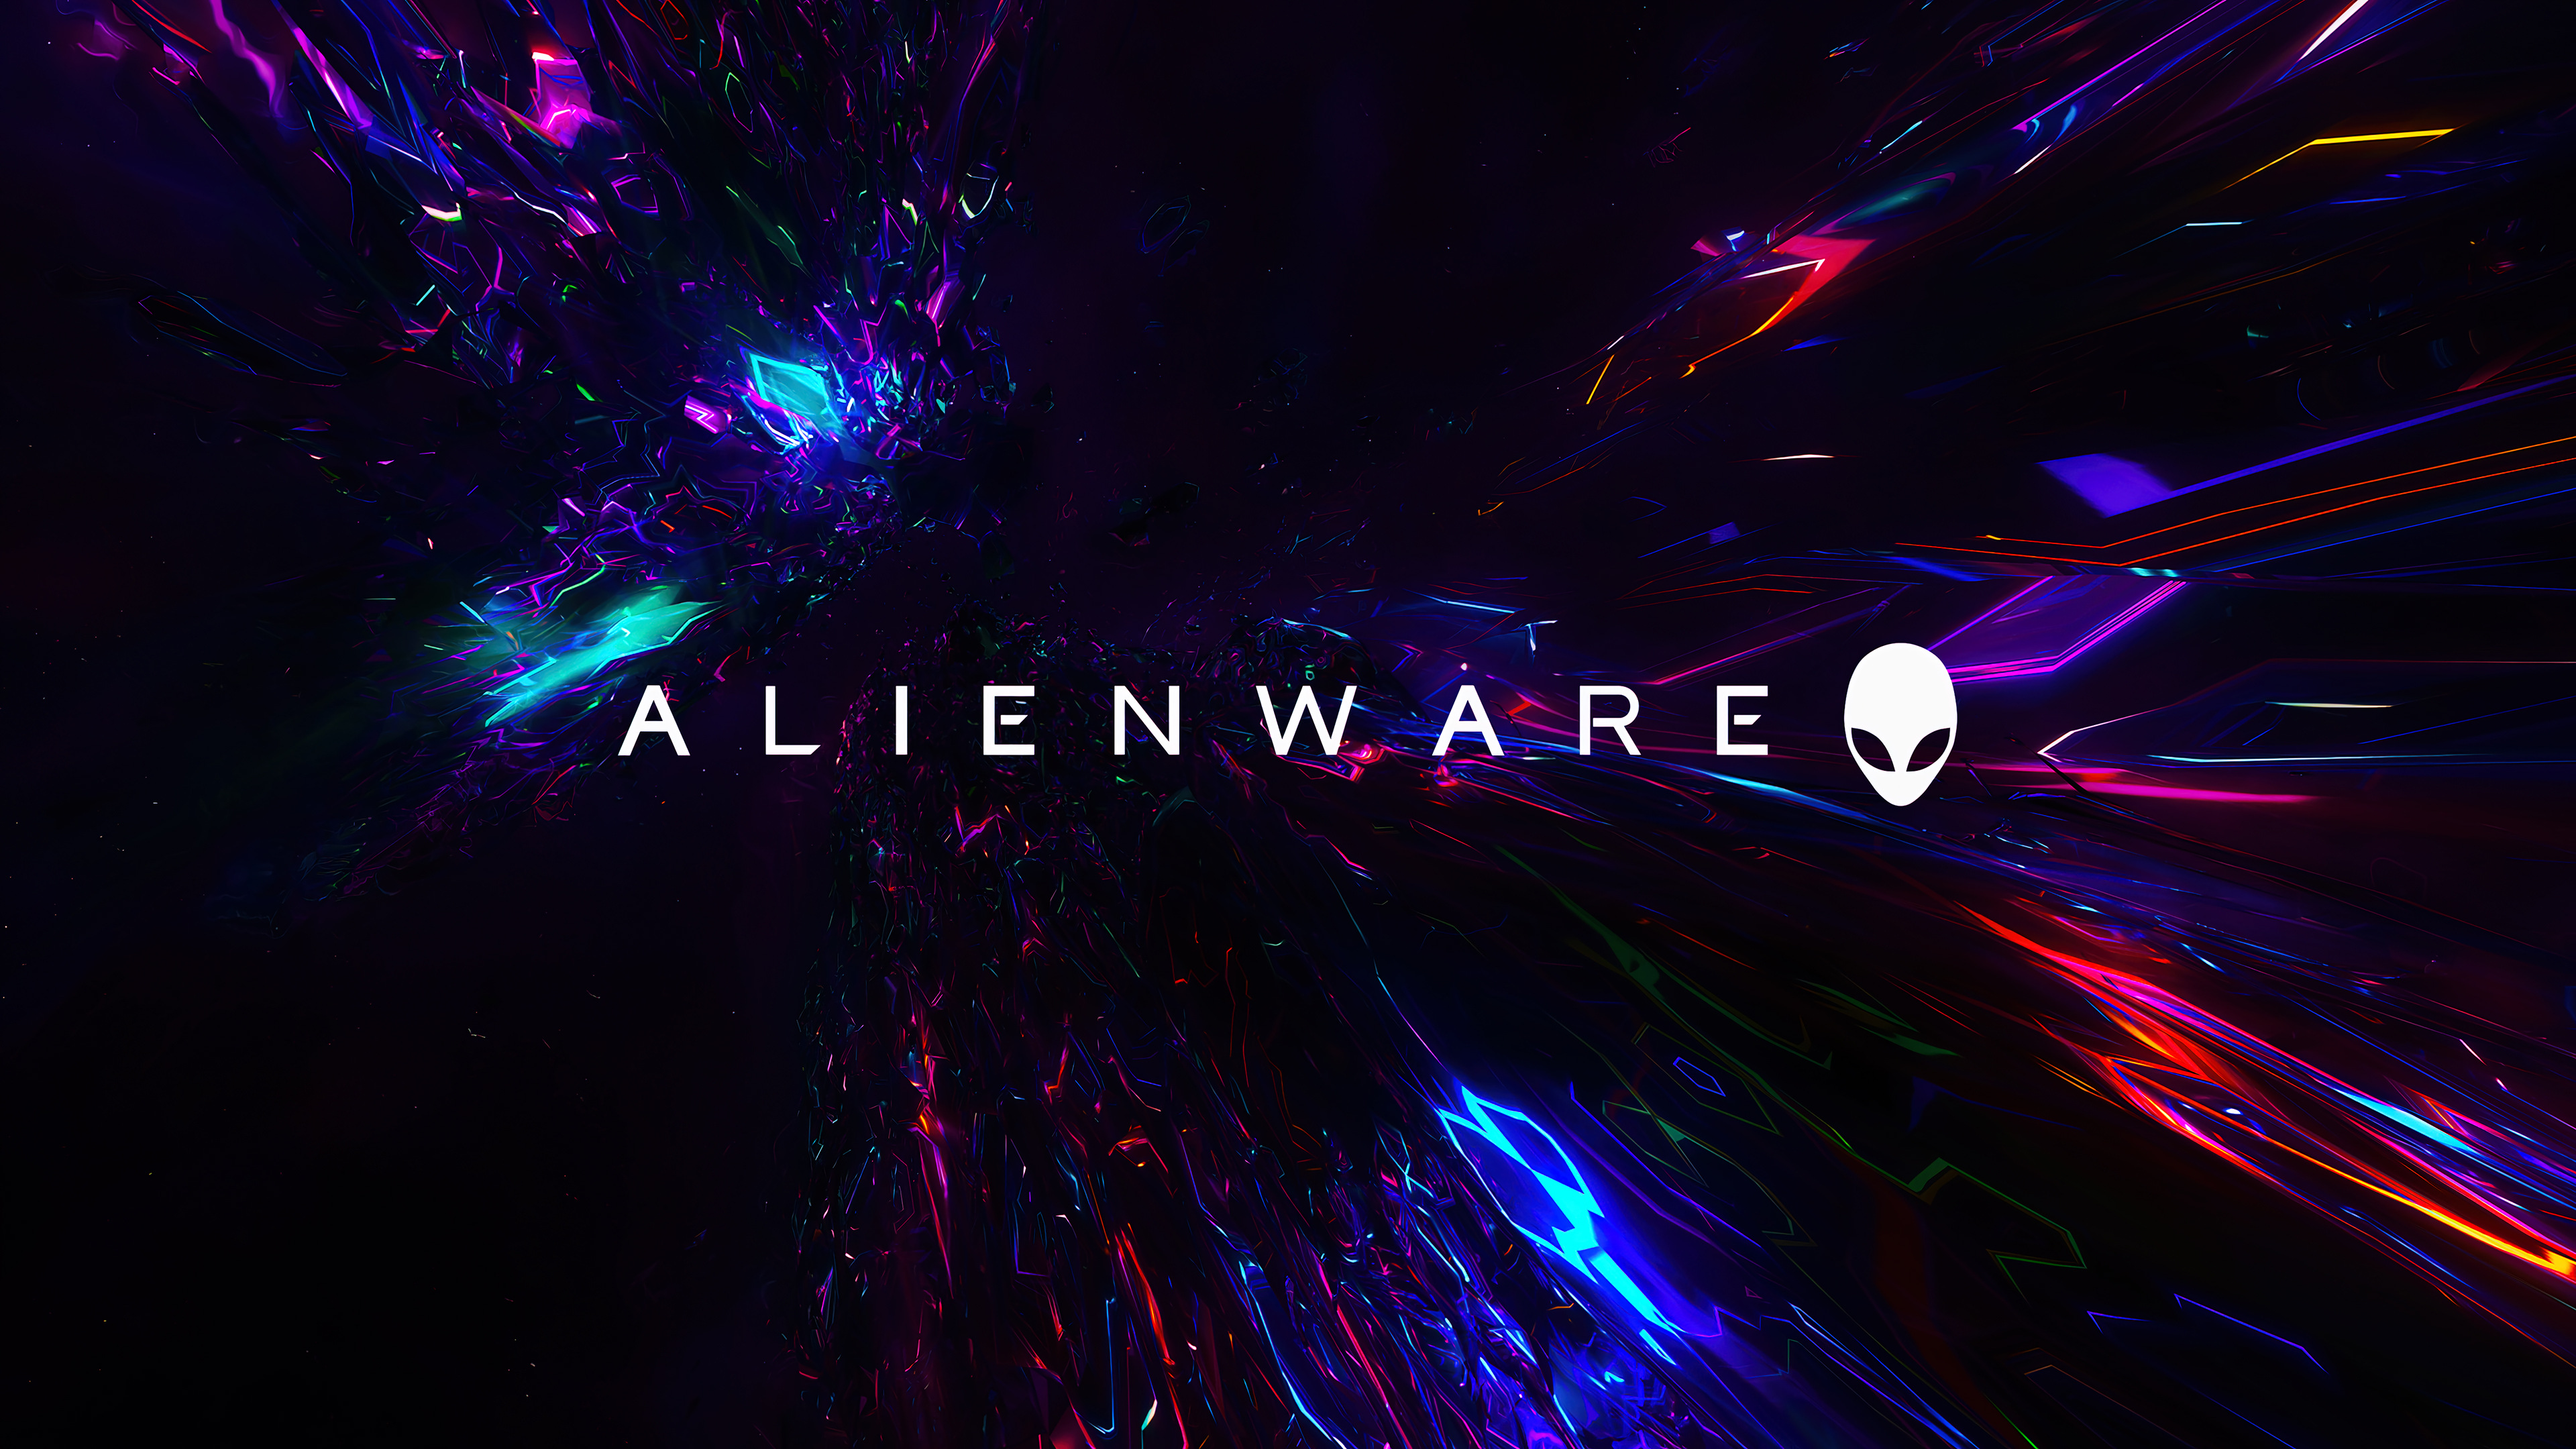 Bạn là fan hâm mộ của Alienware? Một bộ hình nền mới có thể đem đến cho bạn cảm giác mới lạ và phấn khích với những hình ảnh tuyệt đẹp của Alienware. Hãy xem ngay!